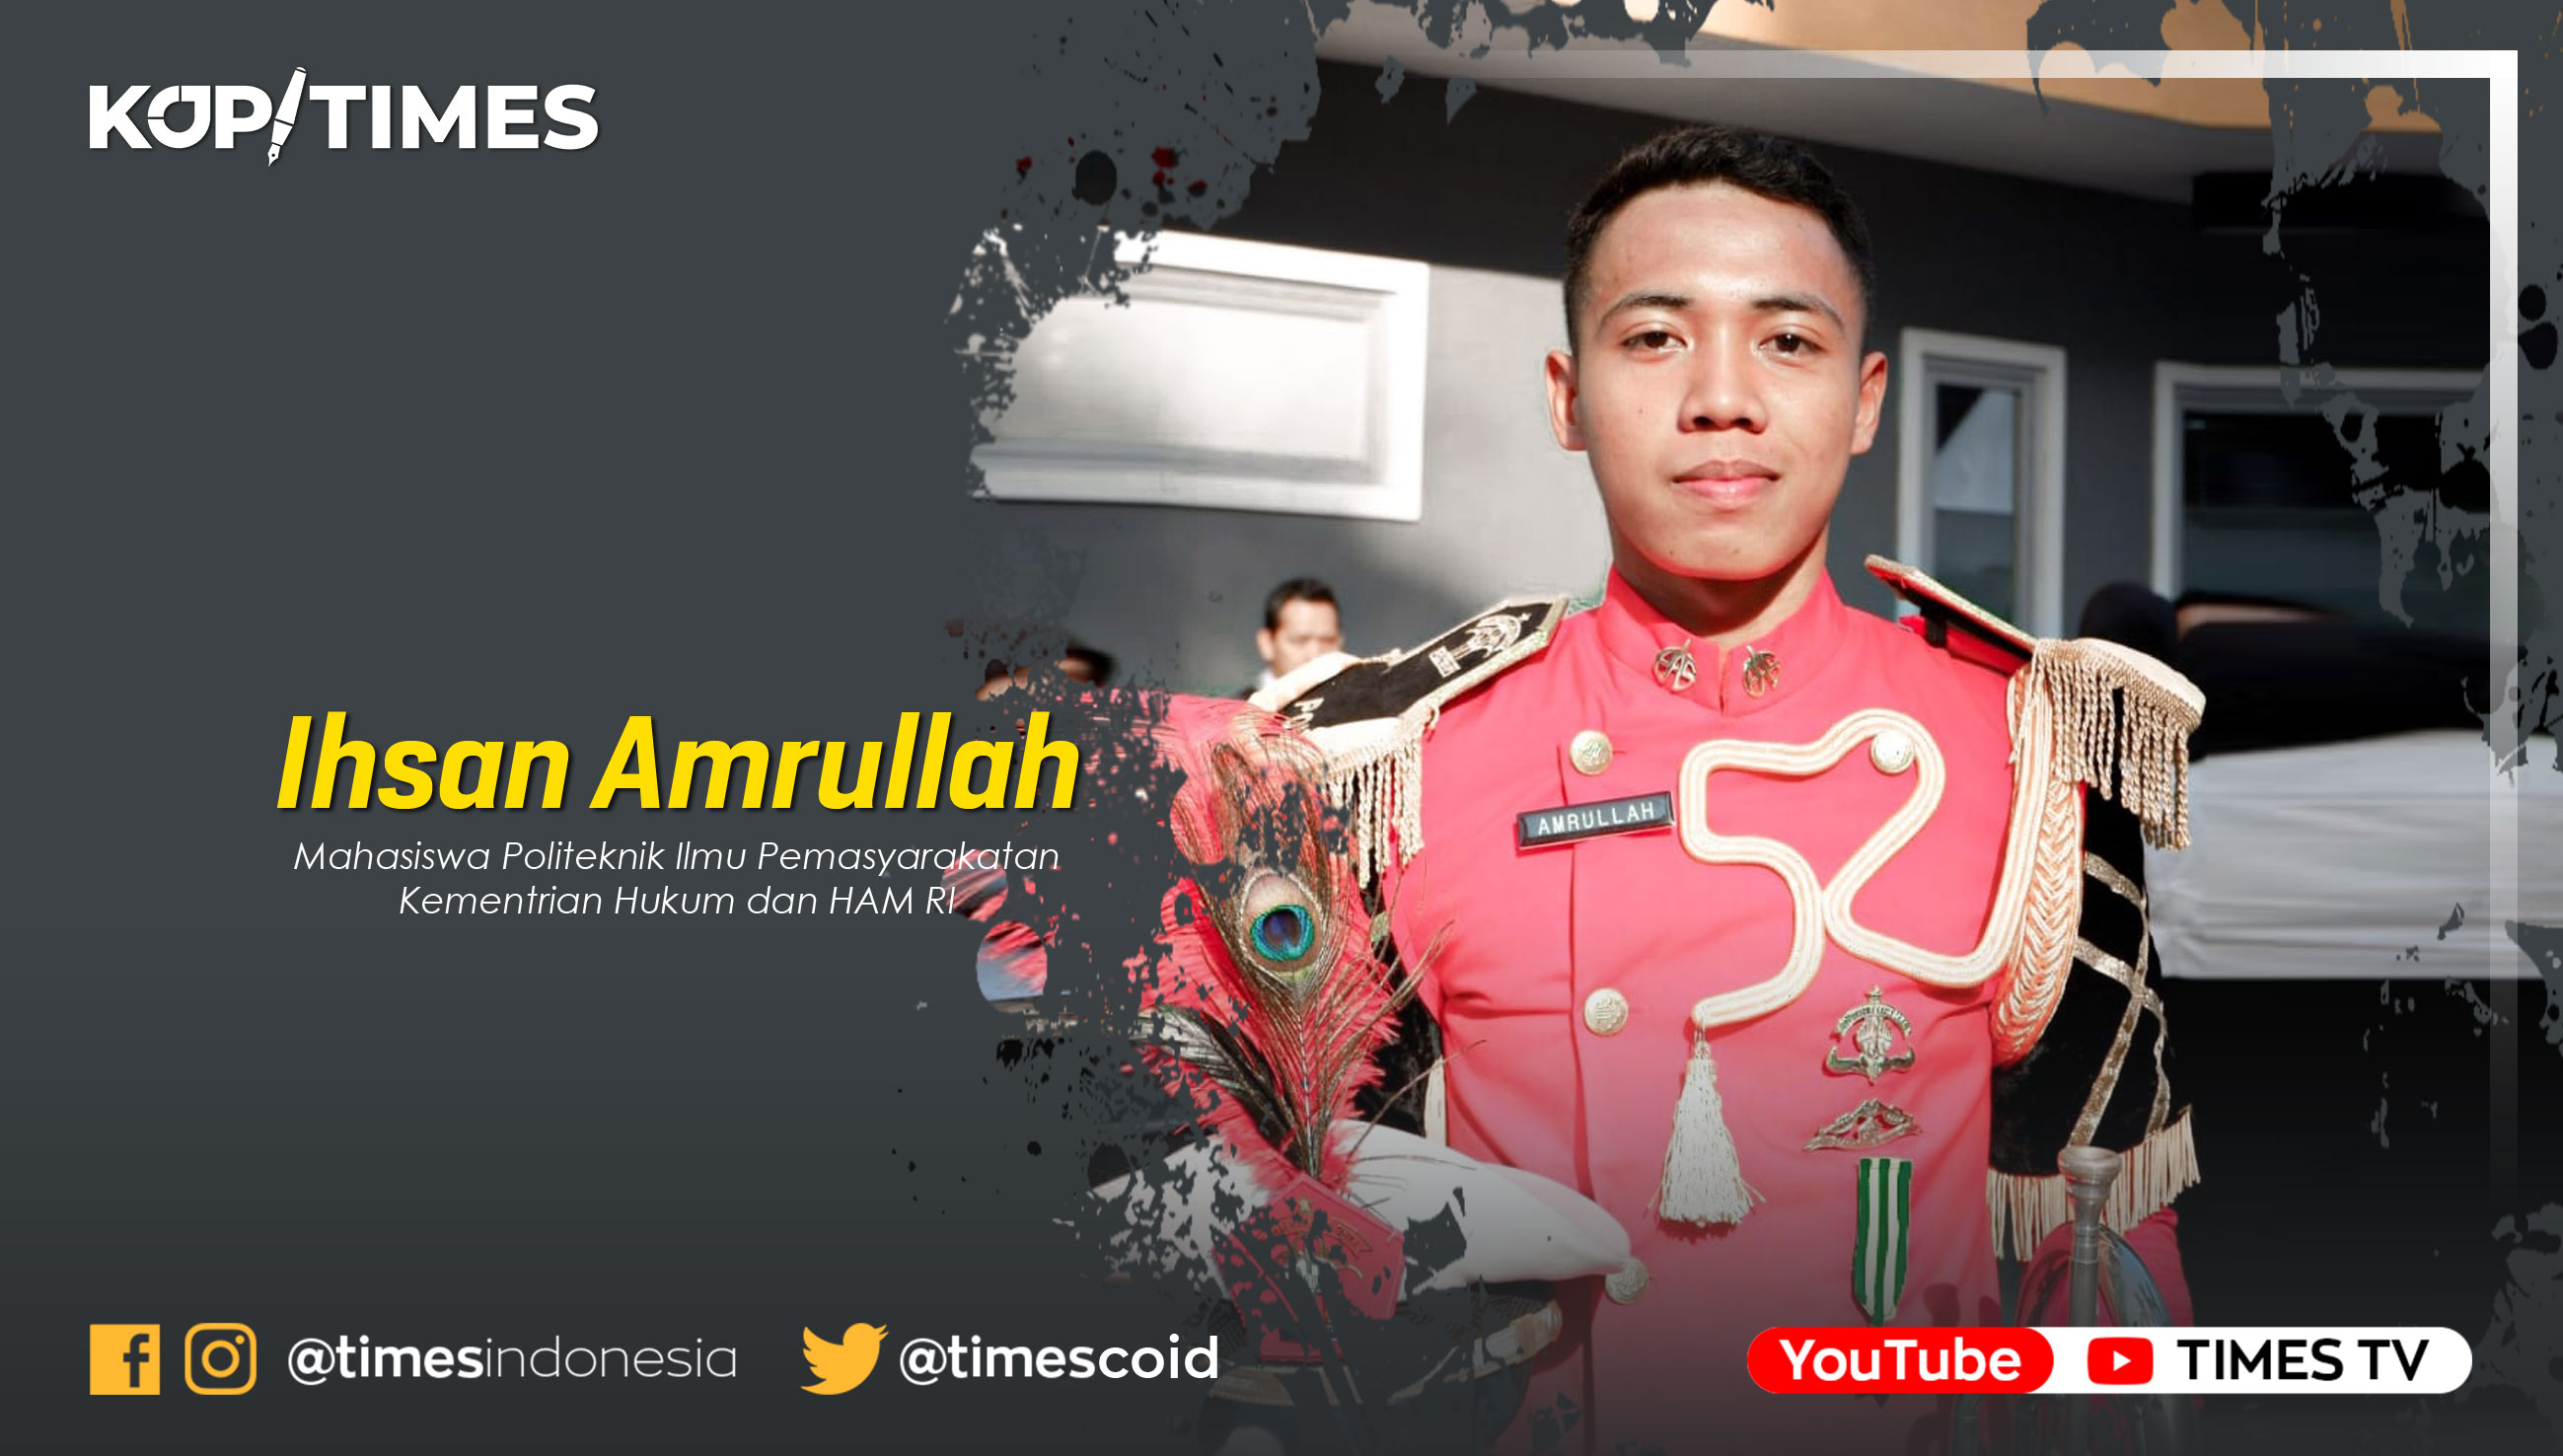 Ihsan Amrullah, Mahasiswa Politeknik Ilmu Pemasyarakatan Kementrian Hukum dan HAM RI.